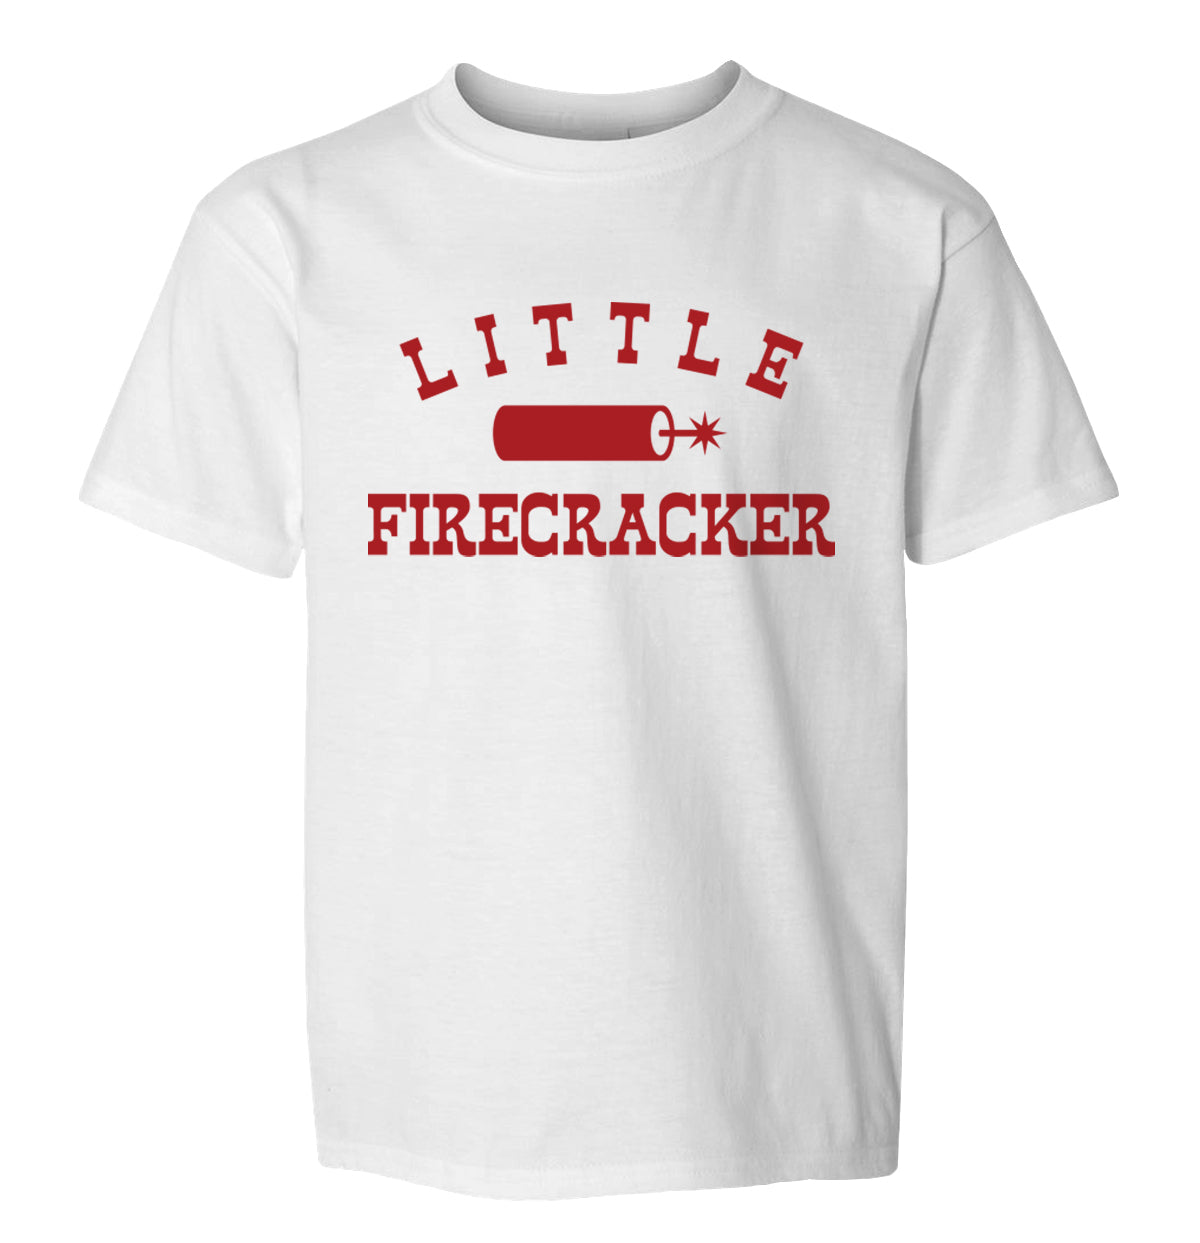 Mama of a Little Firecracker and Little Firecracker